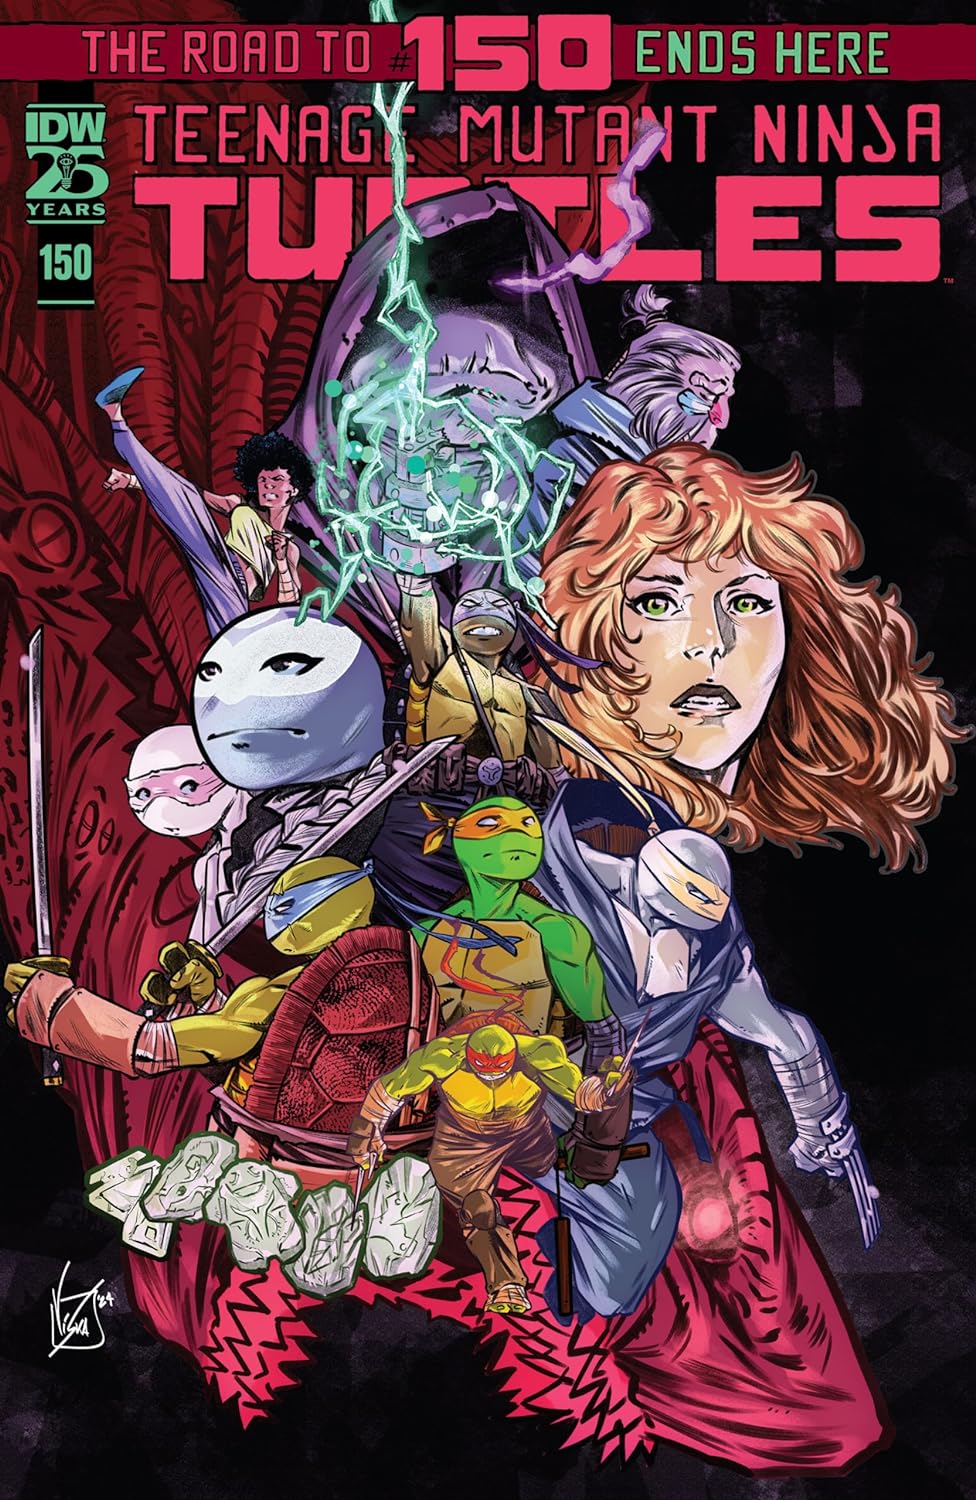 Teenage Mutant Ninja Turtles #150 cover art